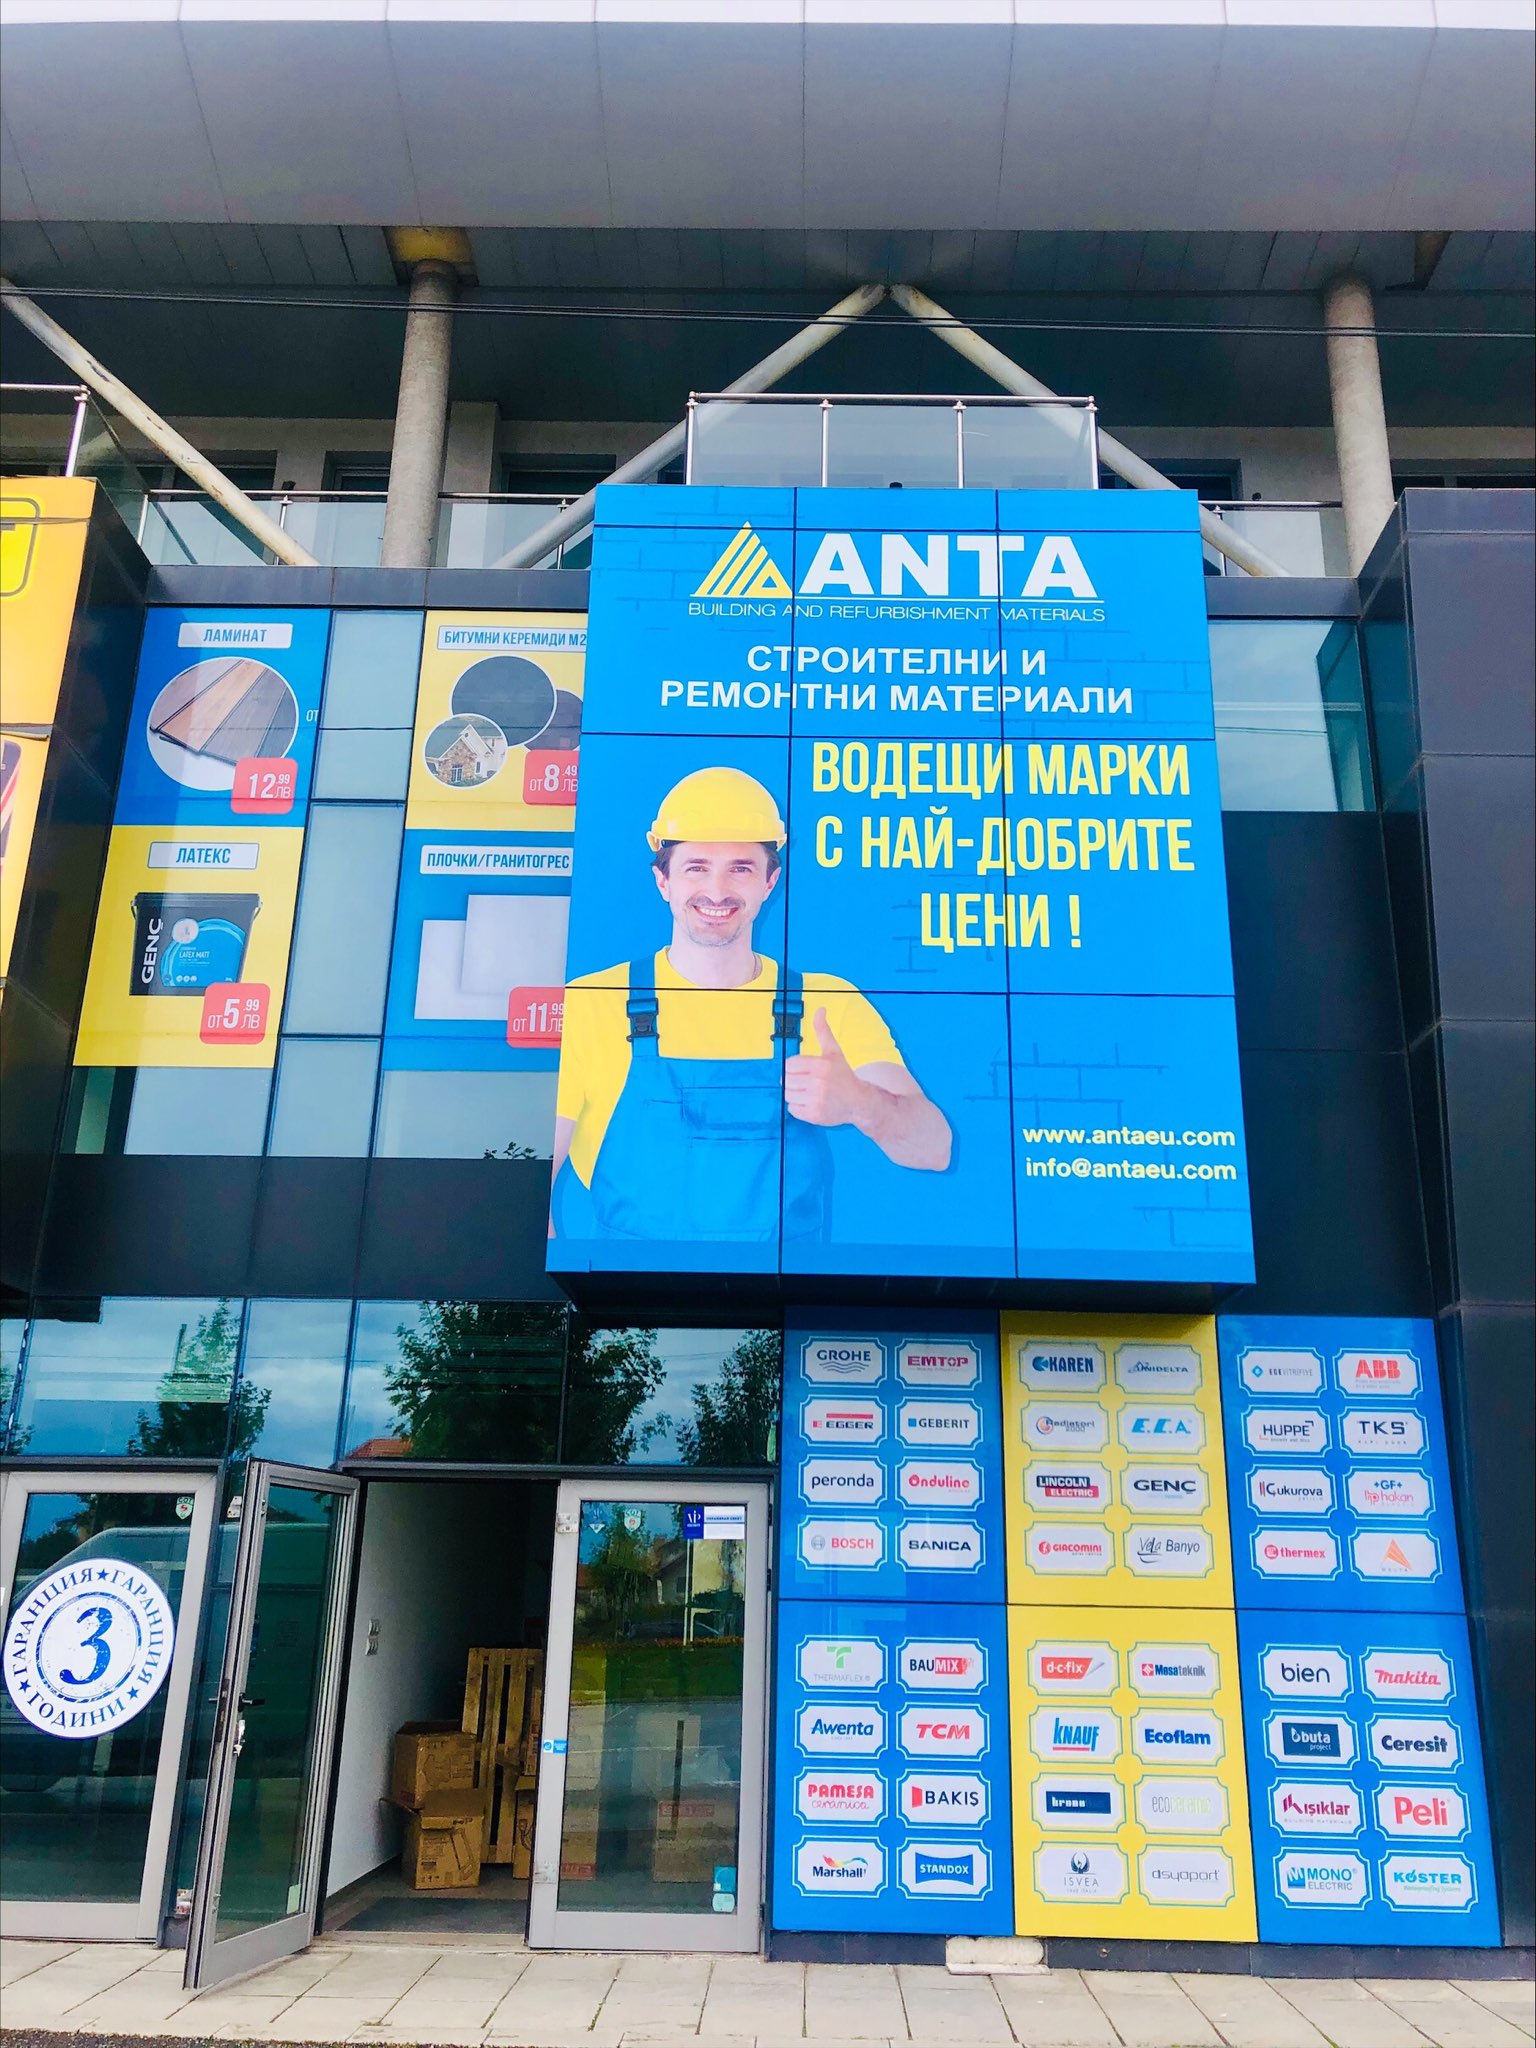 New Anta store in Sofia